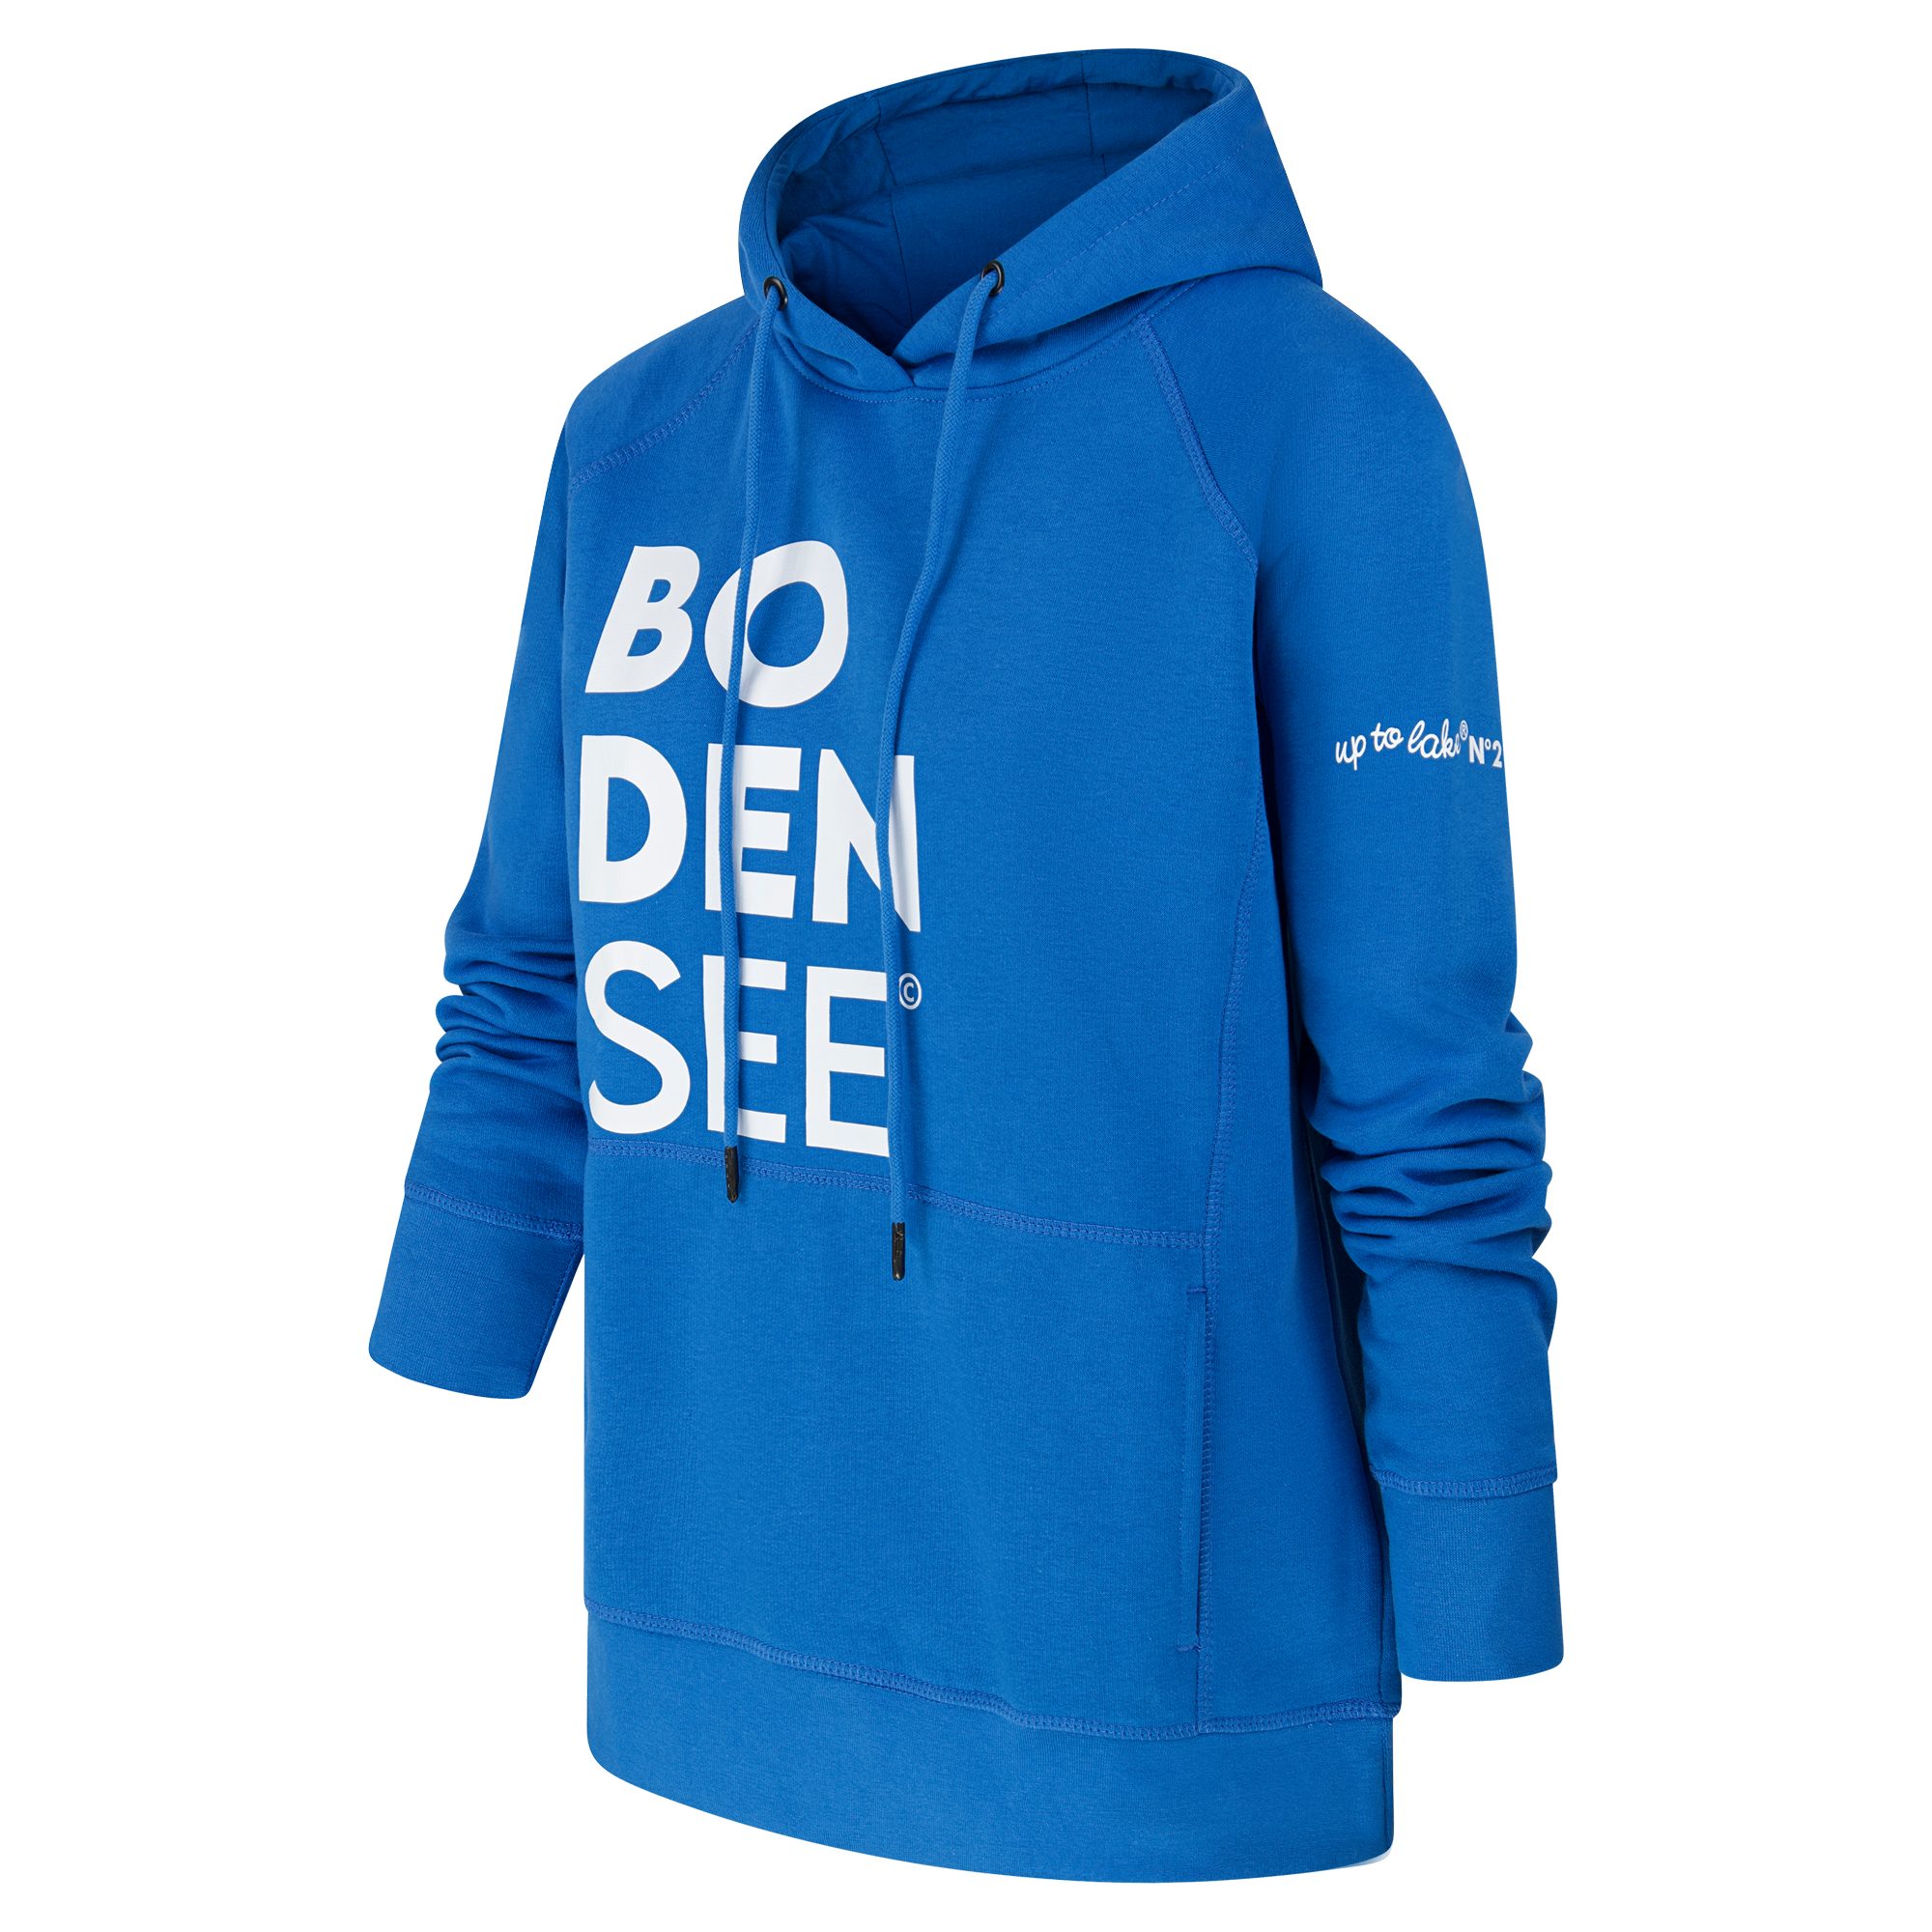 uptolake design Hoodie für in weicher Cobalt-Blau/Weiß mit Schriftzug Bodensee Damen Bio Baumwolle